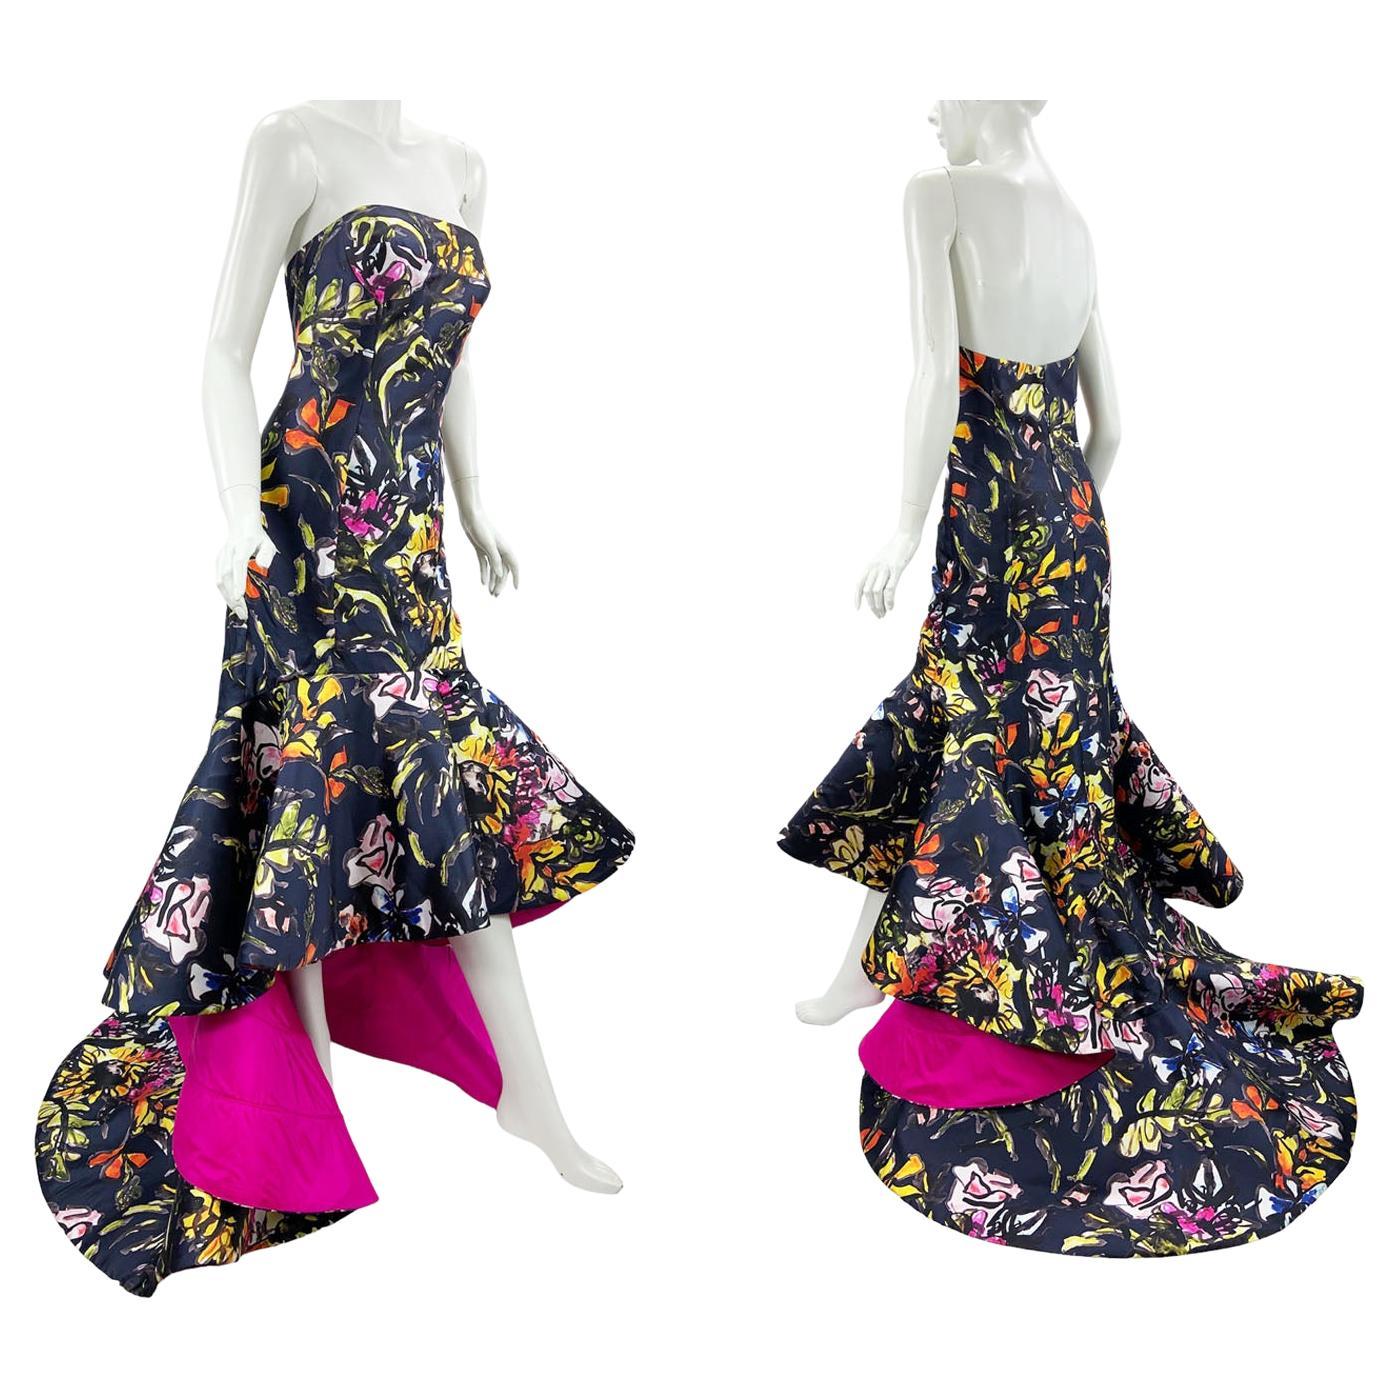 Oscar de la Renta PF 2015 Floral Printed High-Low Corset Dress Gown US size 6 For Sale